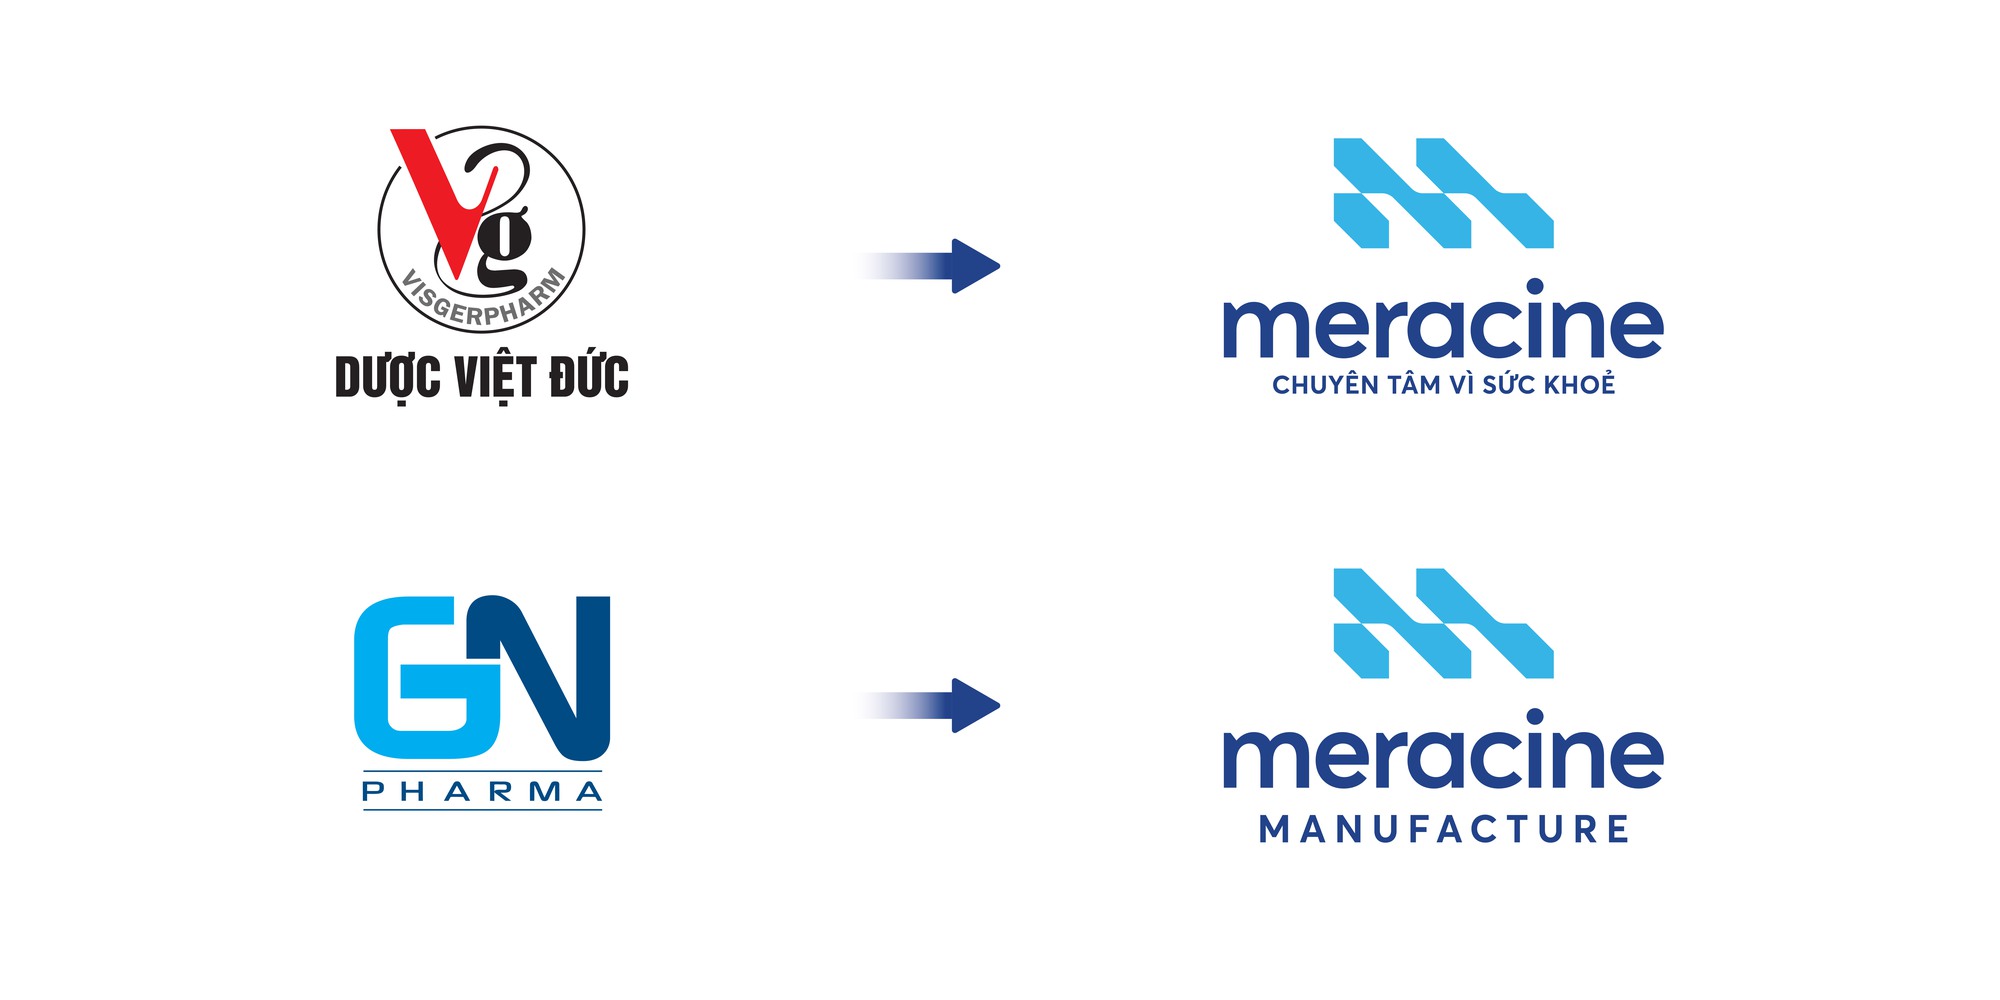 Dược Việt Đức nay là Meracine với chuỗi giá trị toàn diện sản xuất và phân phối dược phẩm - Ảnh 1.